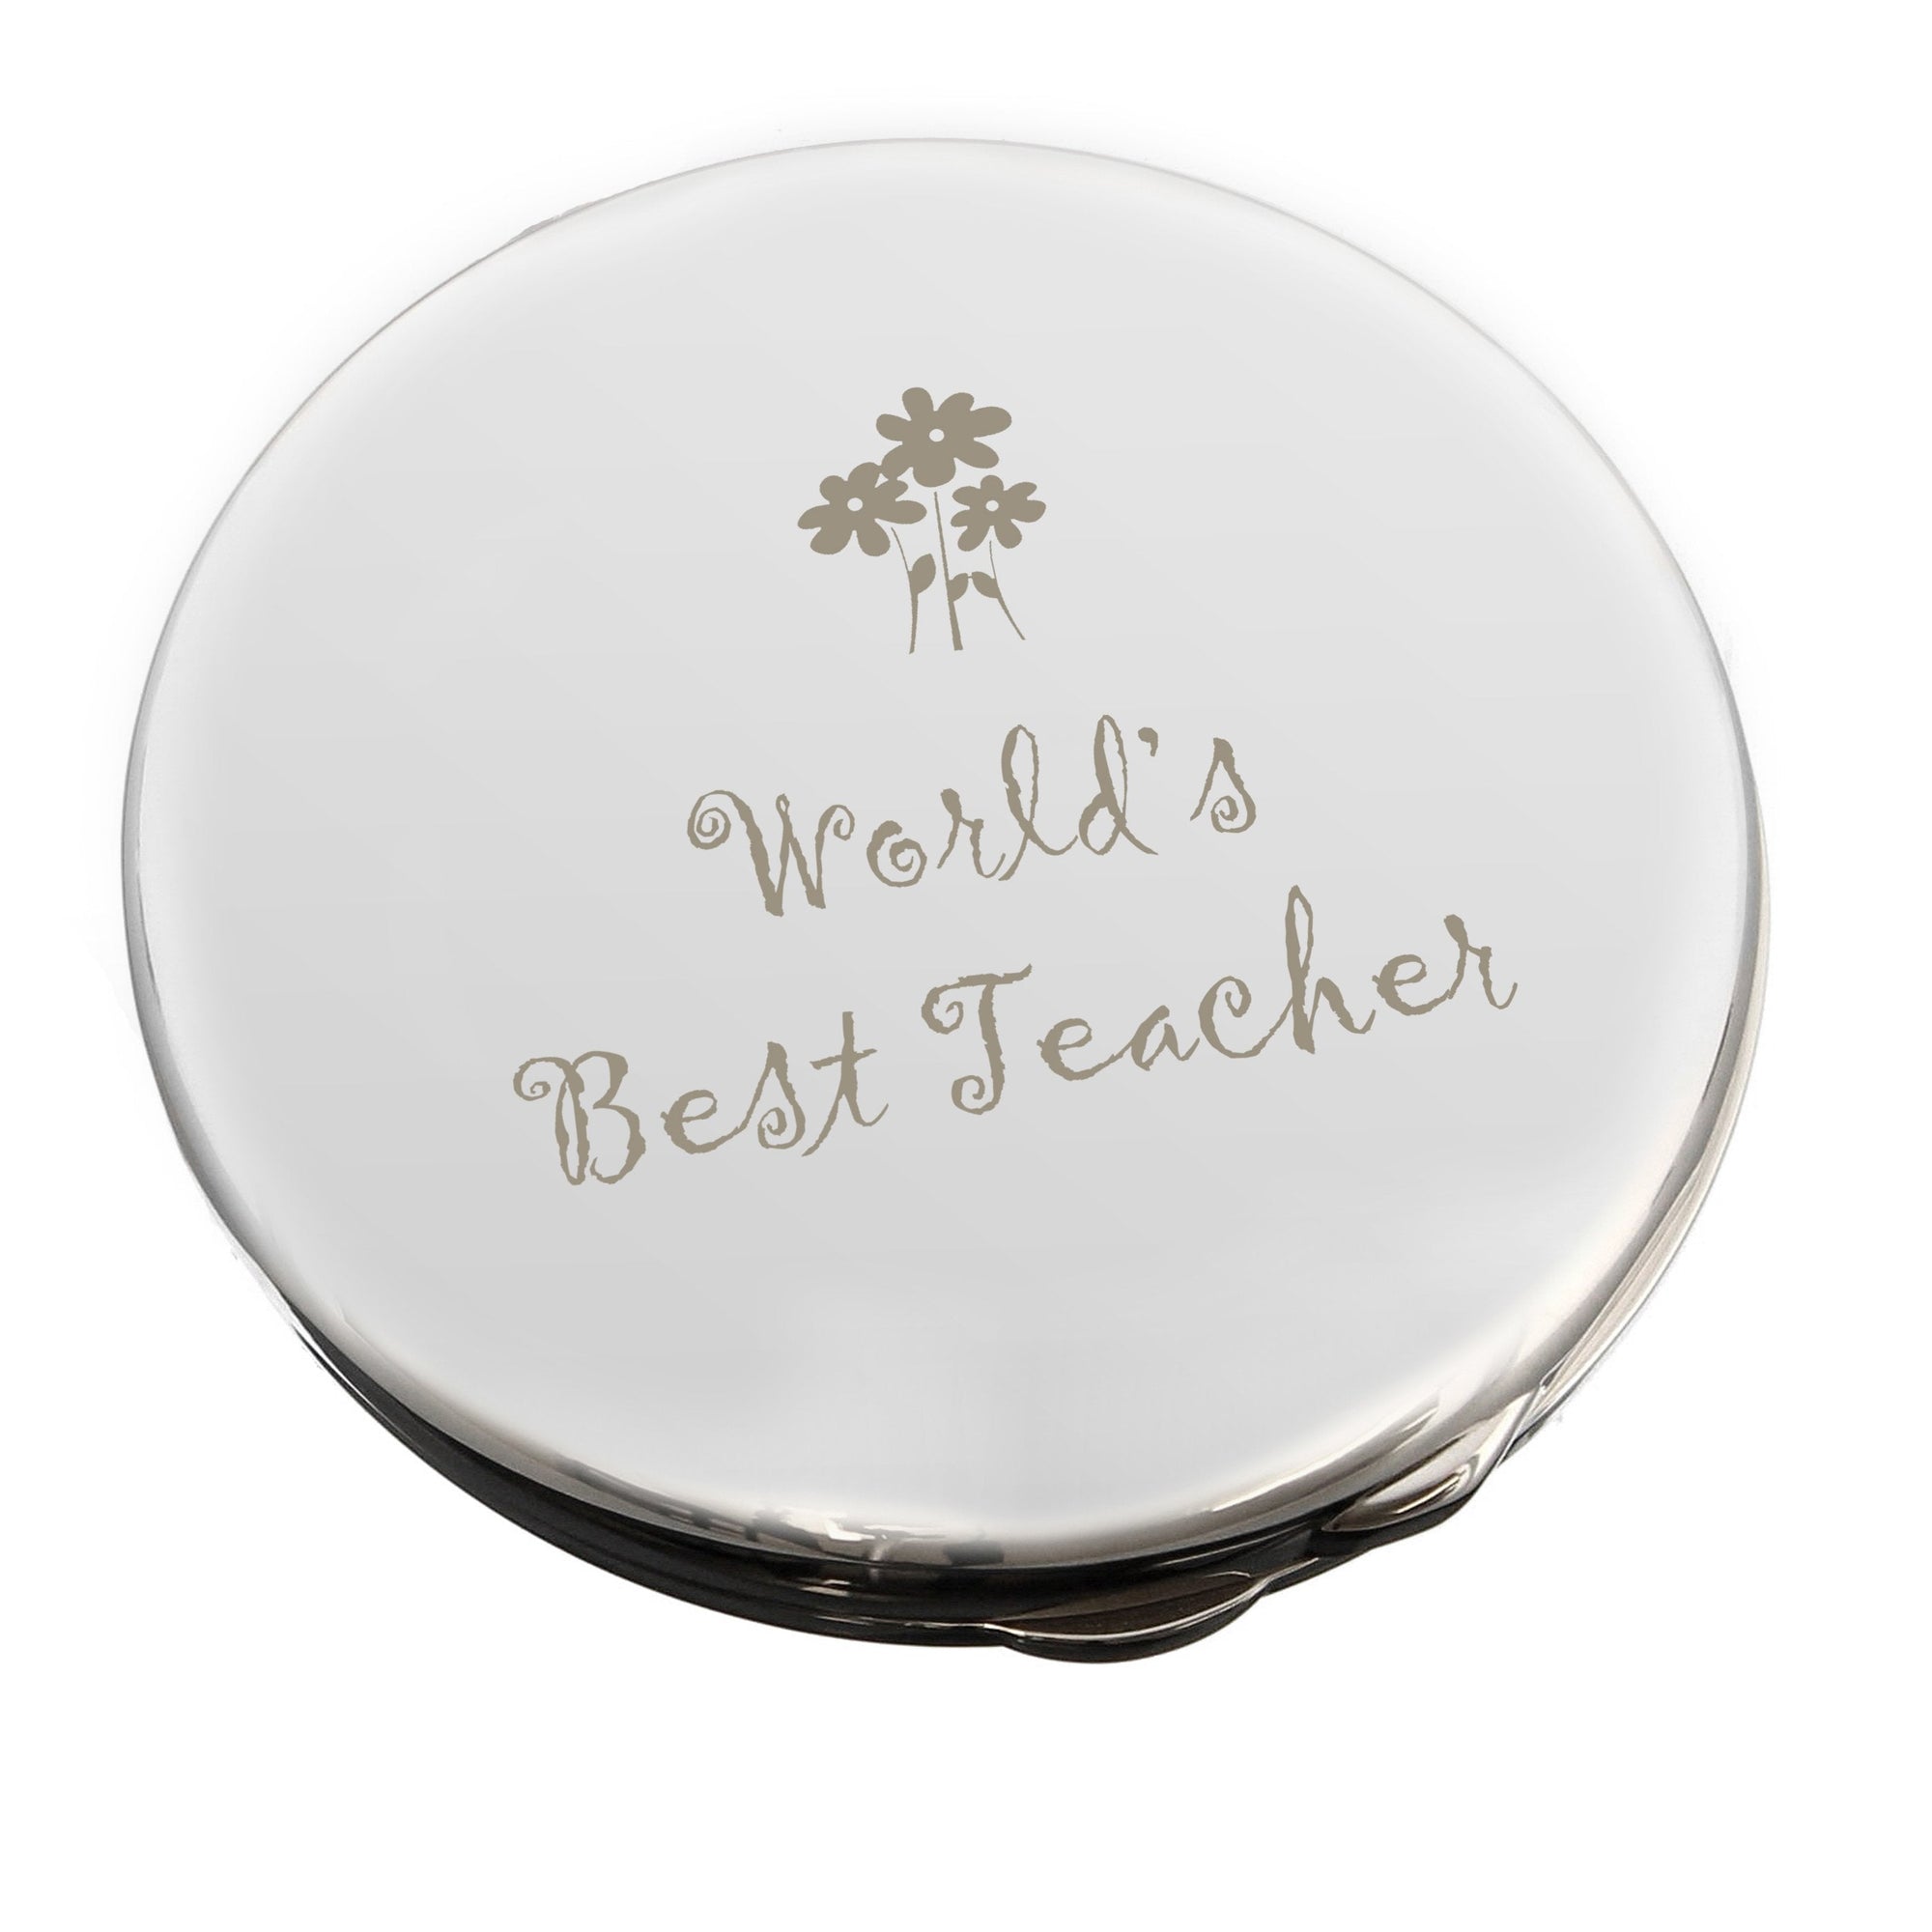 Worlds Best Teacher Round Compact Mirror